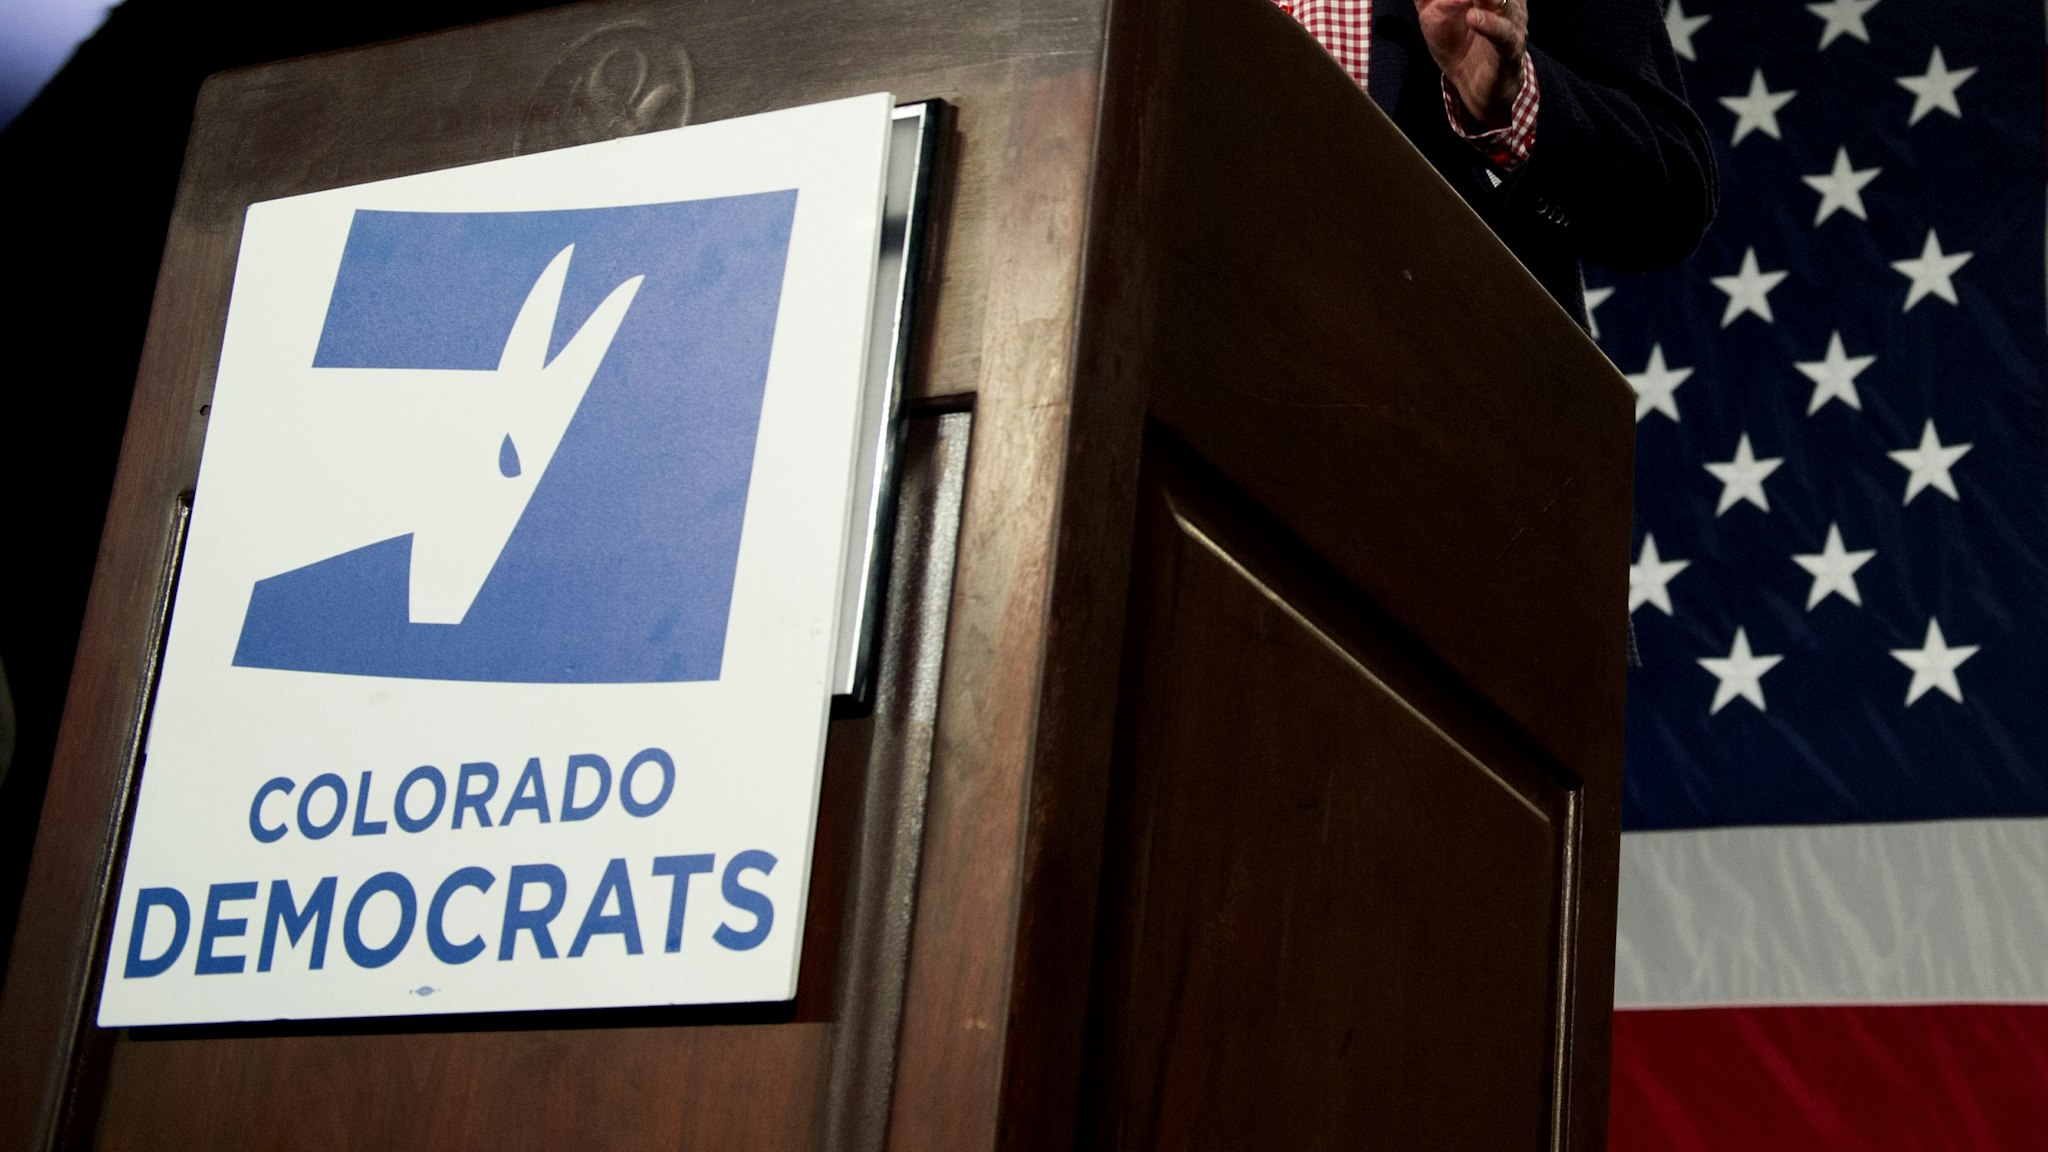 Colorado Governor John Hickenlooper addresses supporters during the Colorado Democrats watch party in Denver, Colorado, on November 6, 2018.